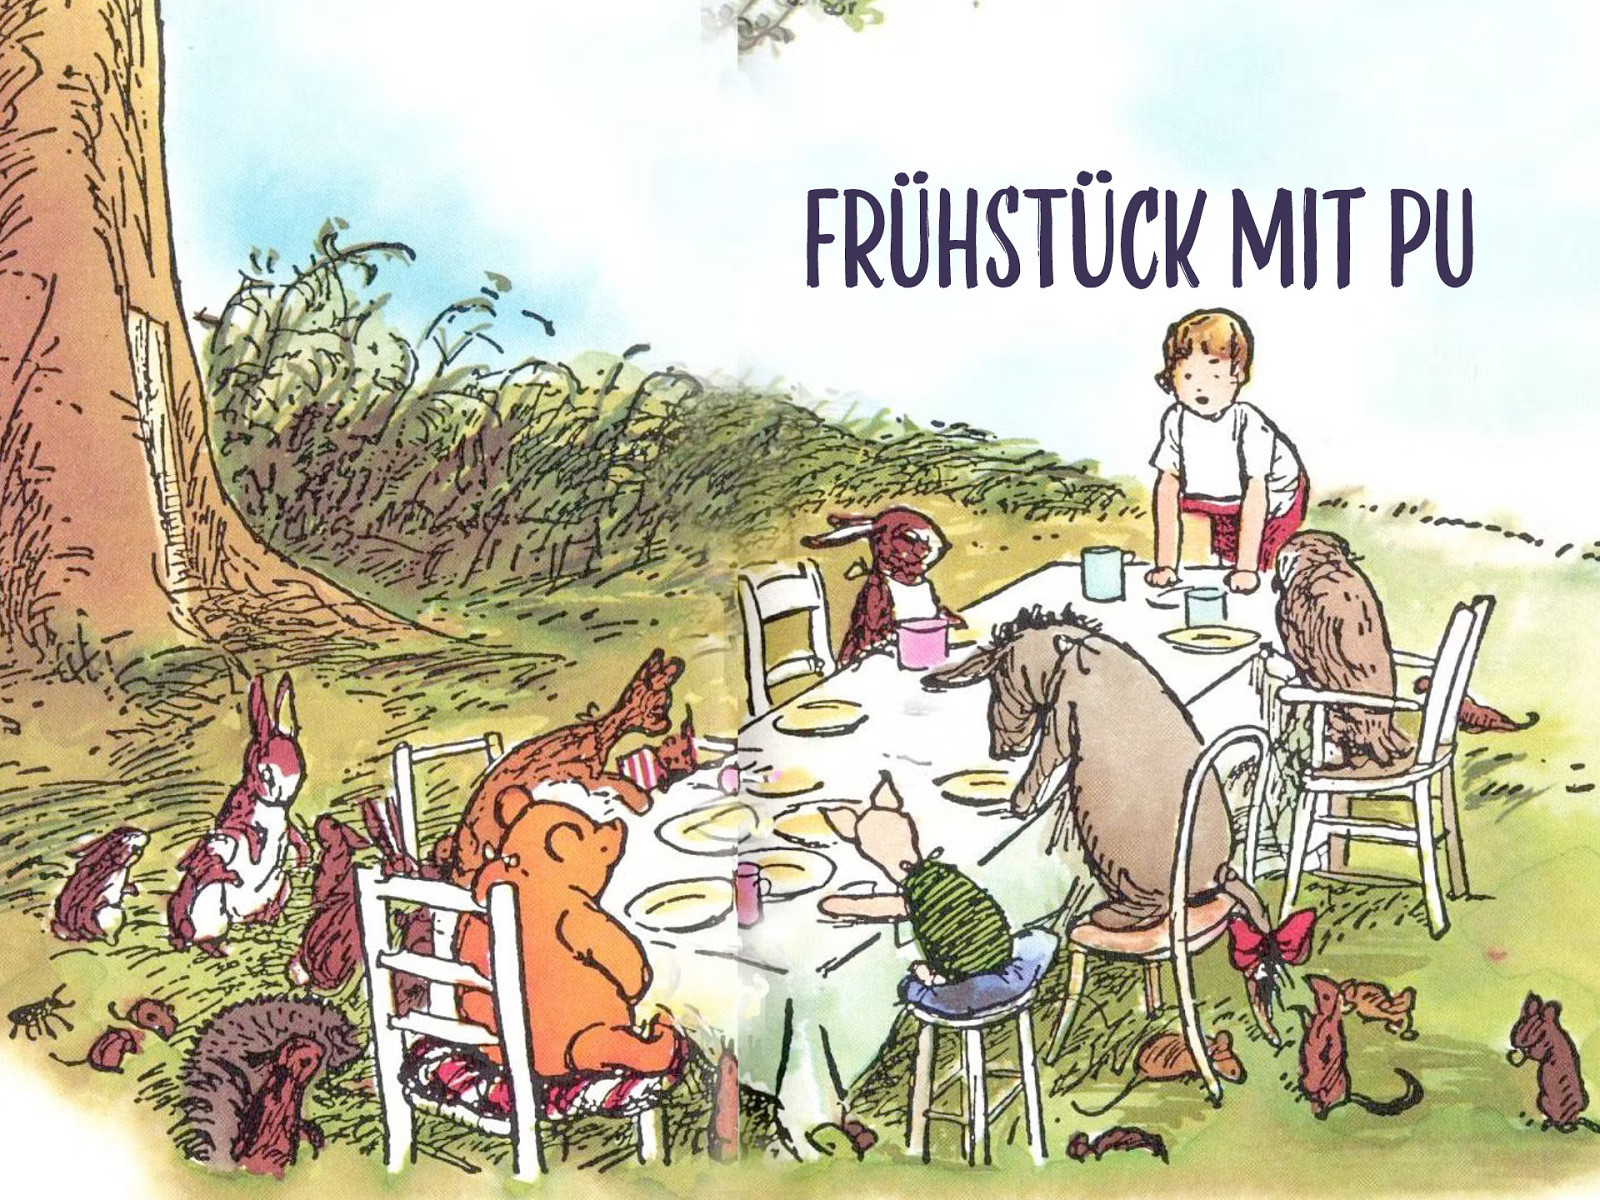 Frühstück mit Pu by Gunnar Bittersmann